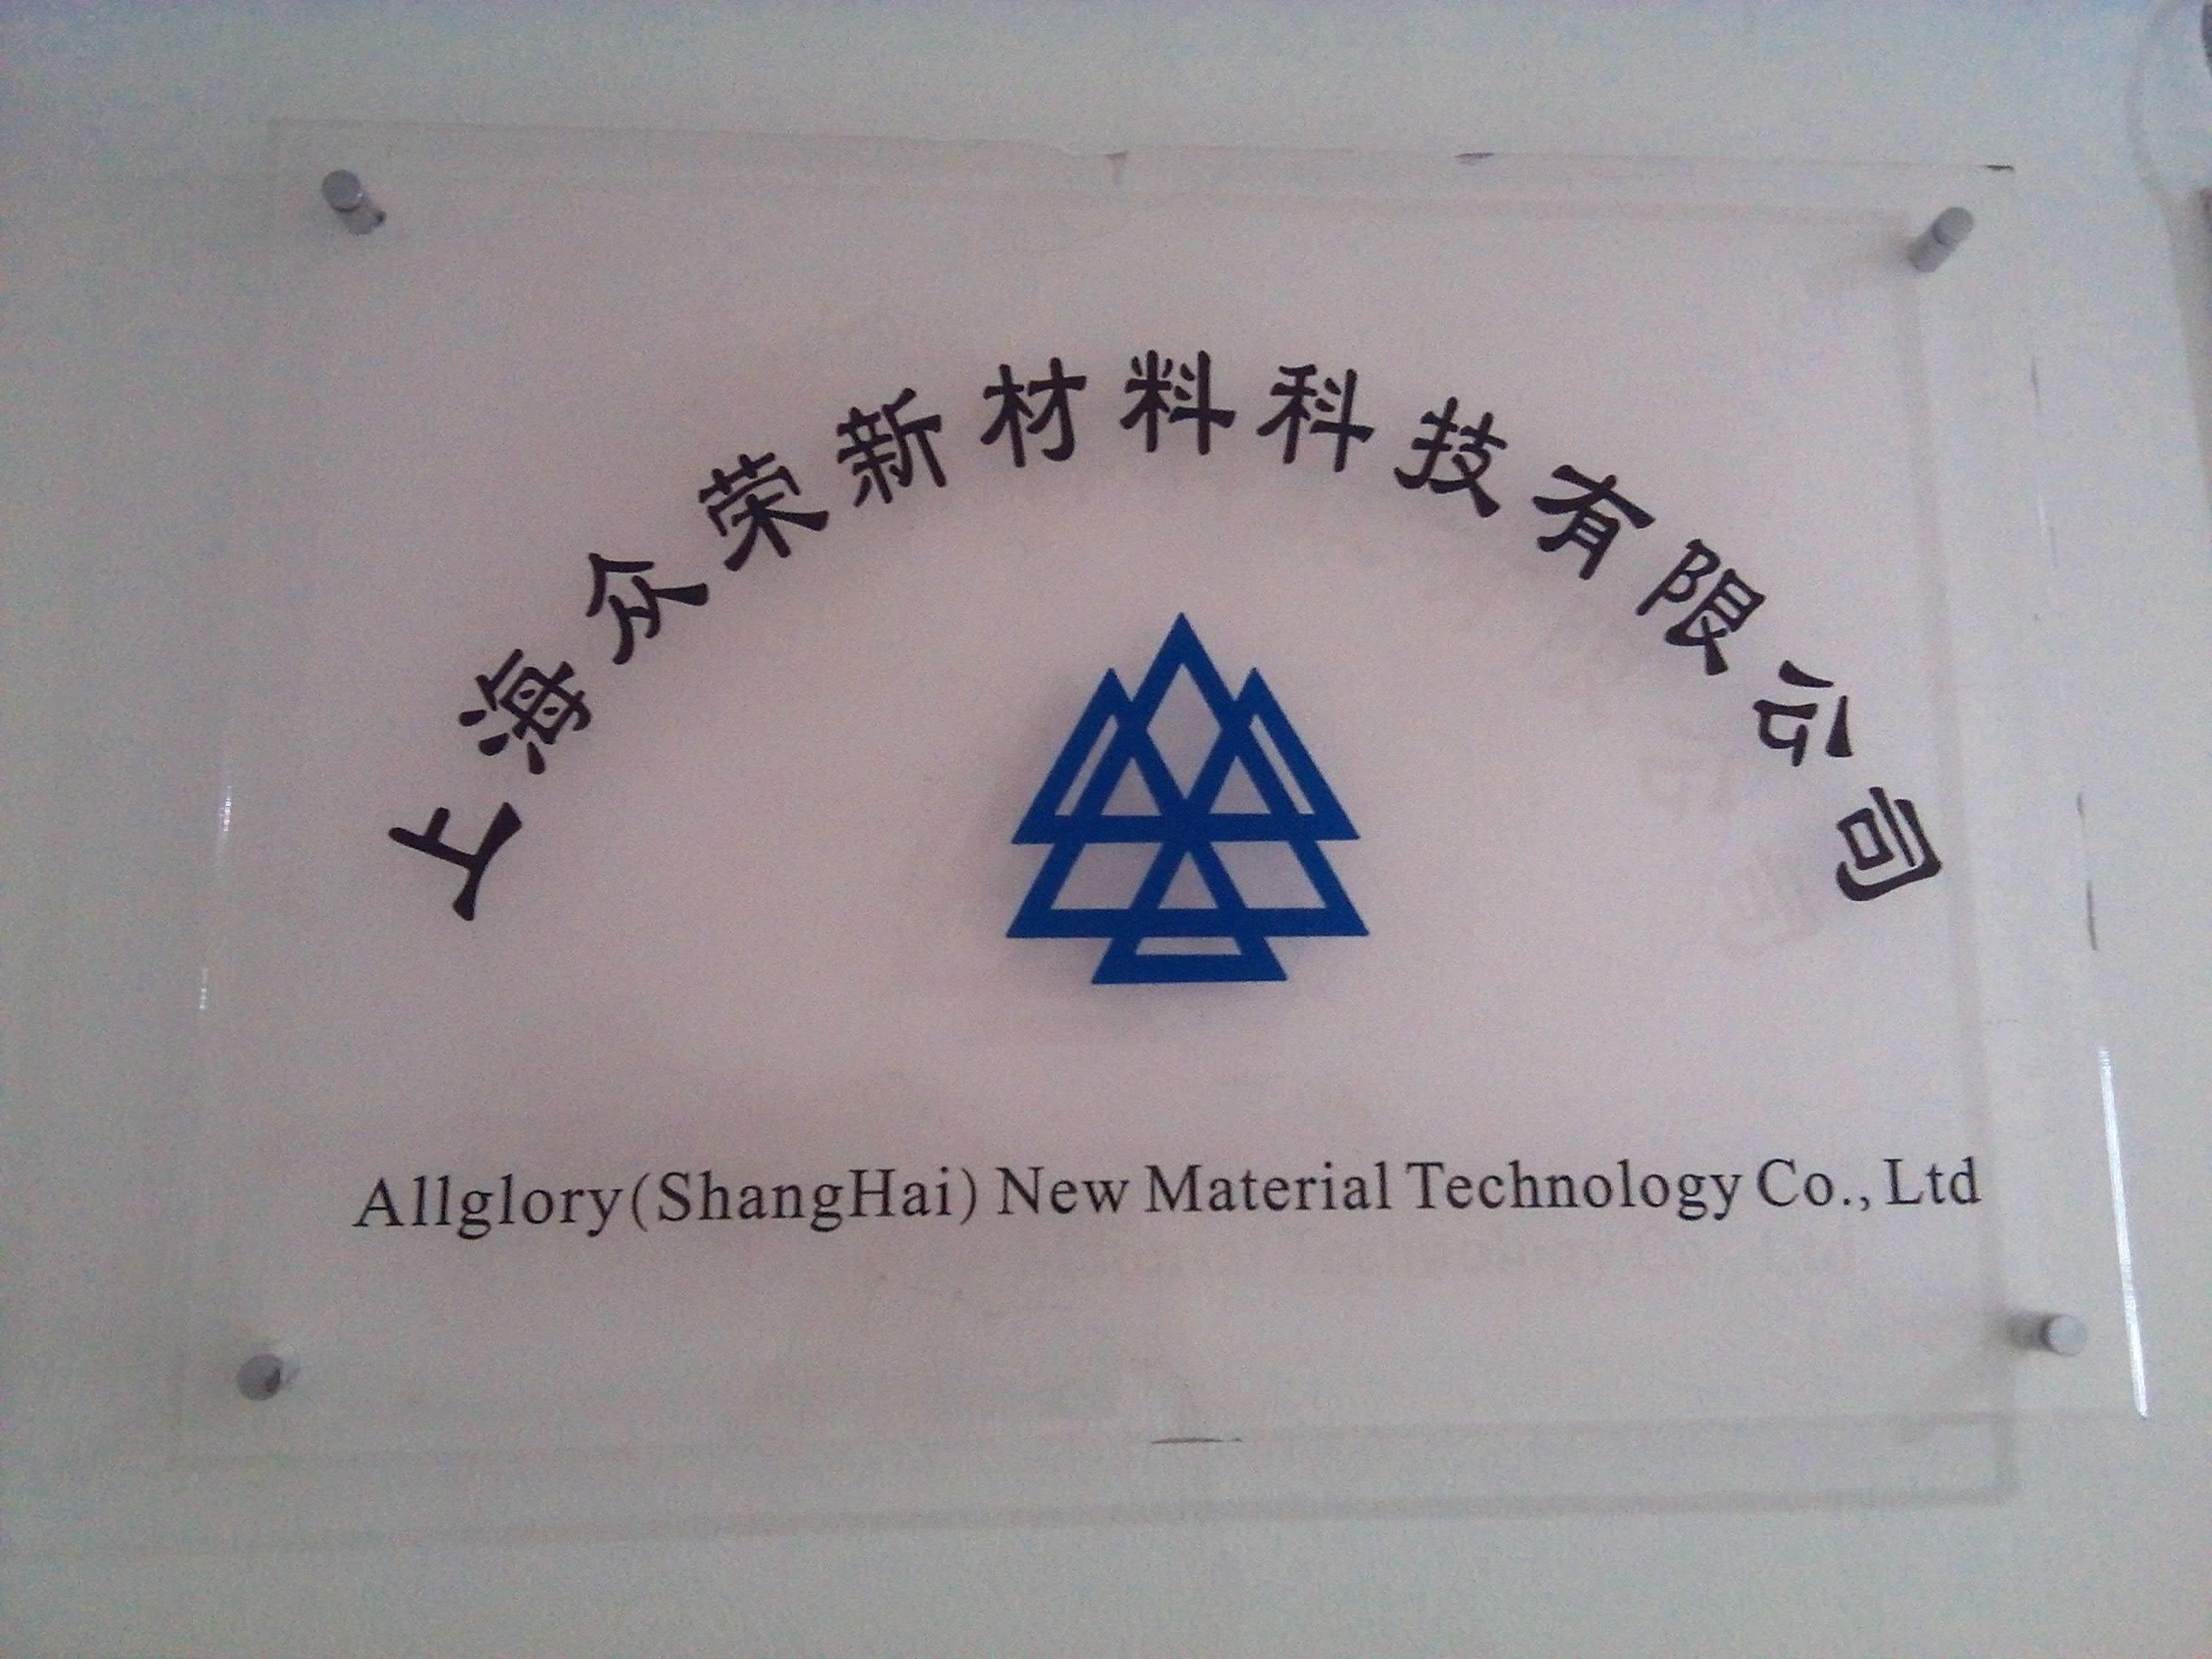 上海众荣新材料科技有限公司 -提供光固化树脂